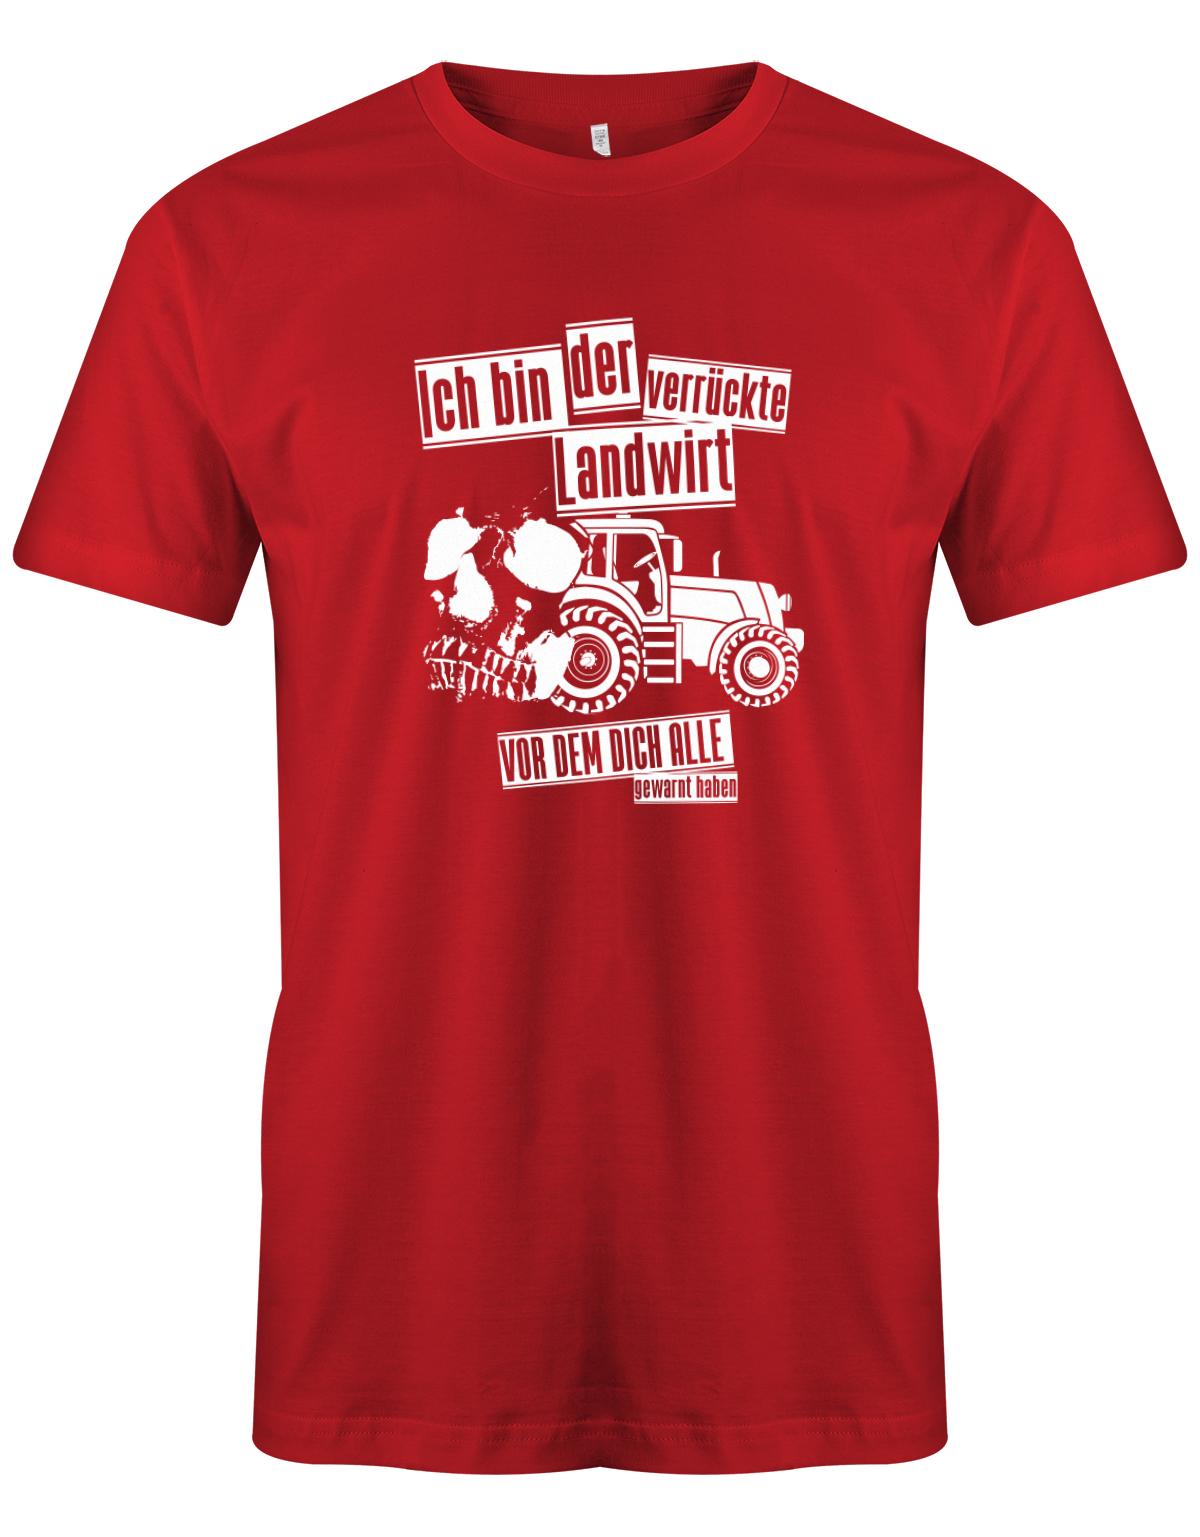 Landwirtschaft Shirt Männer - Ich bin der verrückte Landwirt vor dem dich alle gewarnt haben. Rot